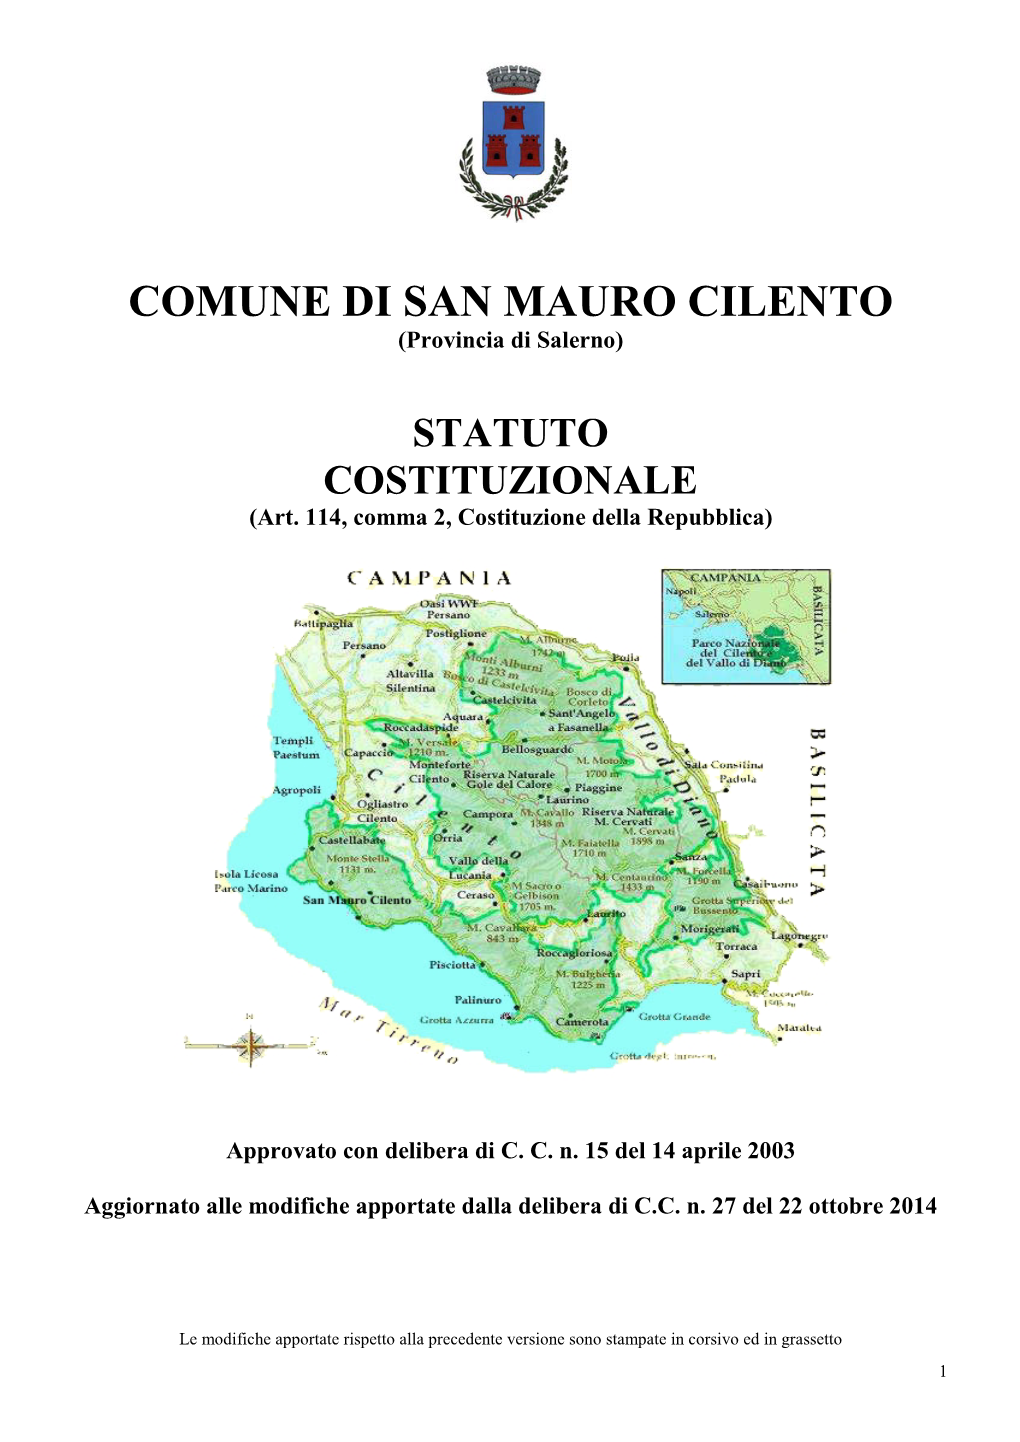 COMUNE DI SAN MAURO CILENTO (Provincia Di Salerno)